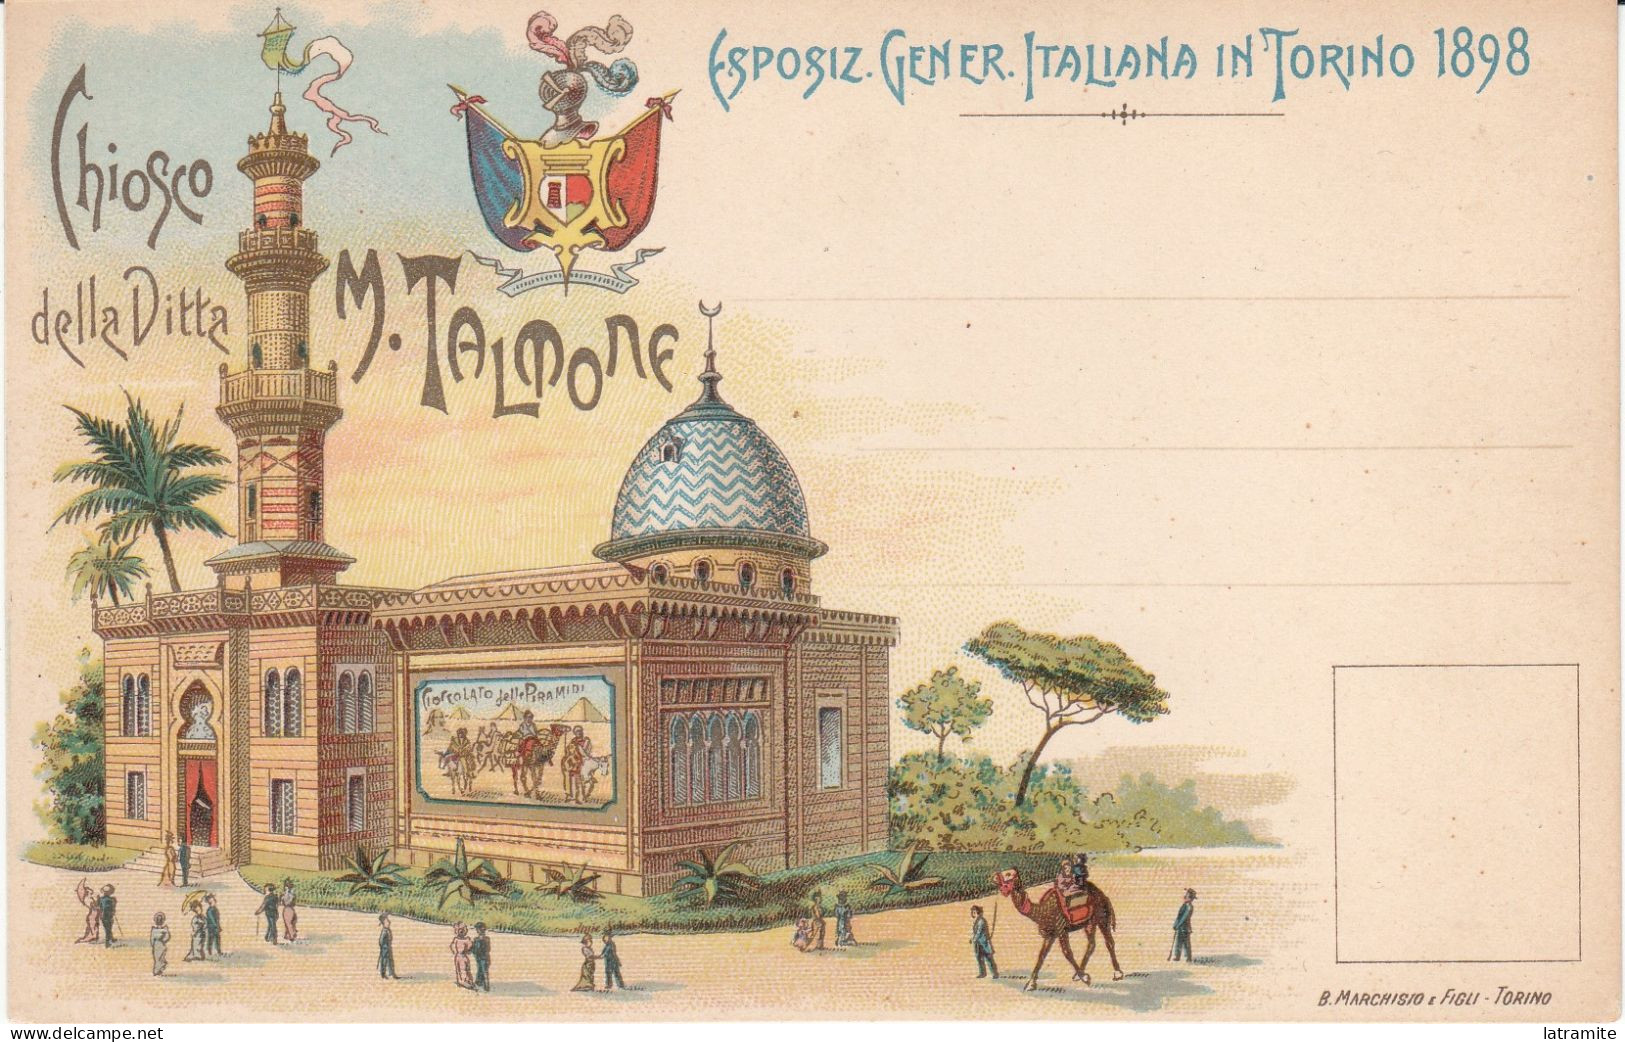 TALMONE - ESPOSIZ. GENER. ITALIANA IN TORINO 1898 - Publicité